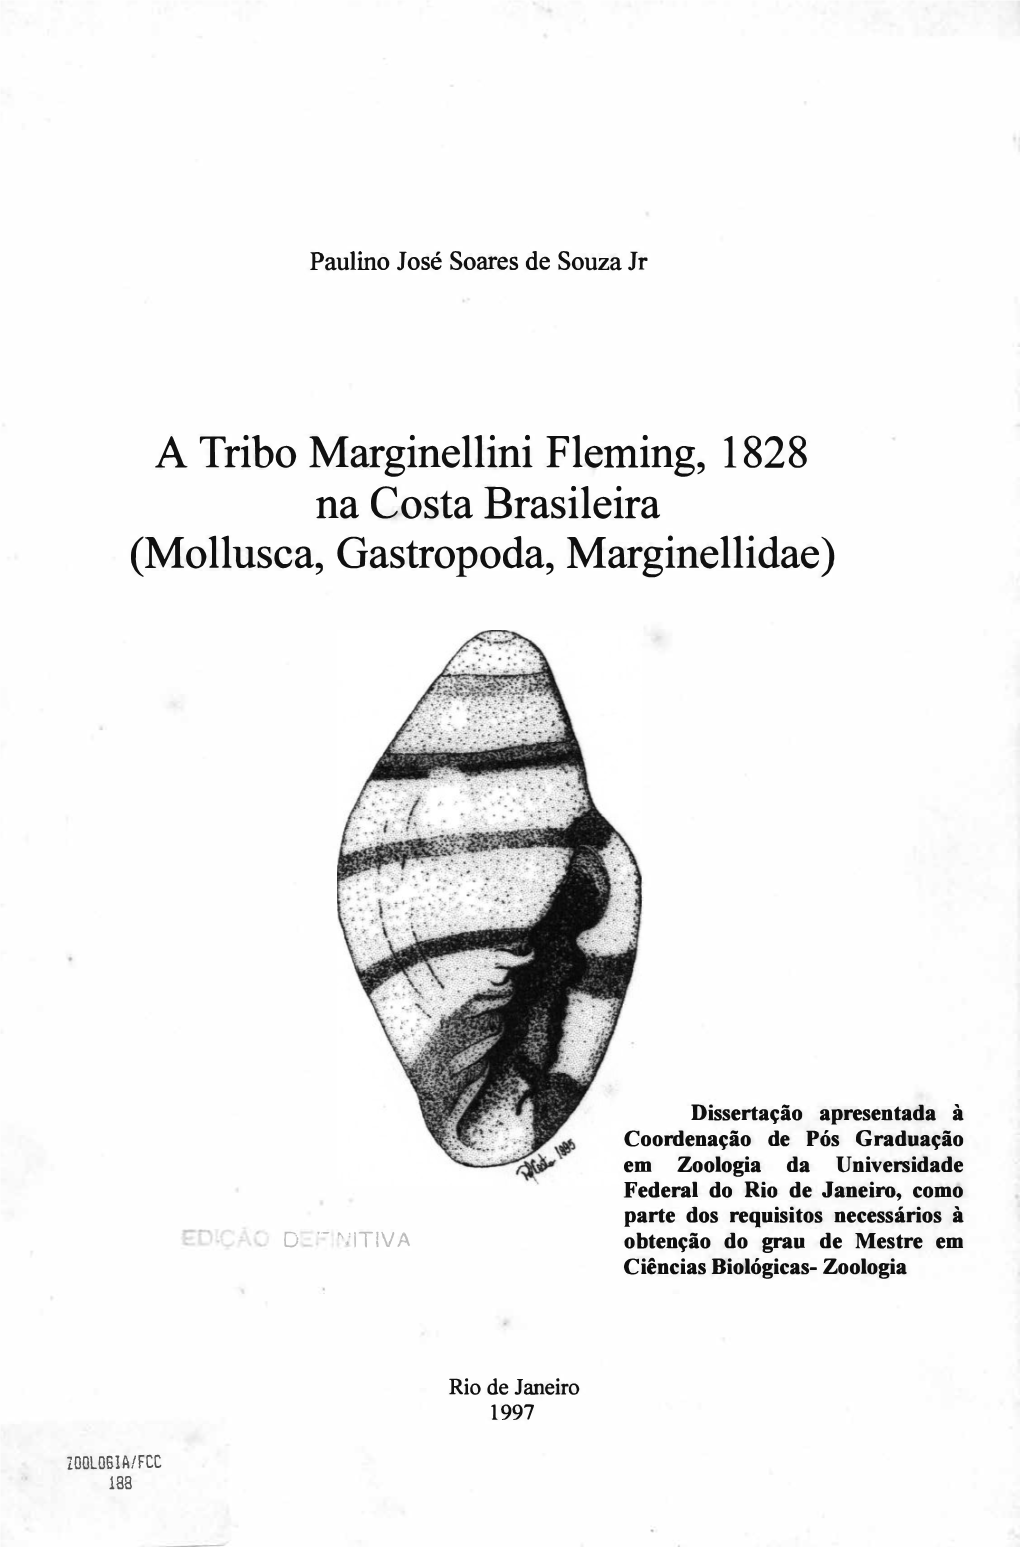 Mollusca, Gastropoda, Marginellidae)